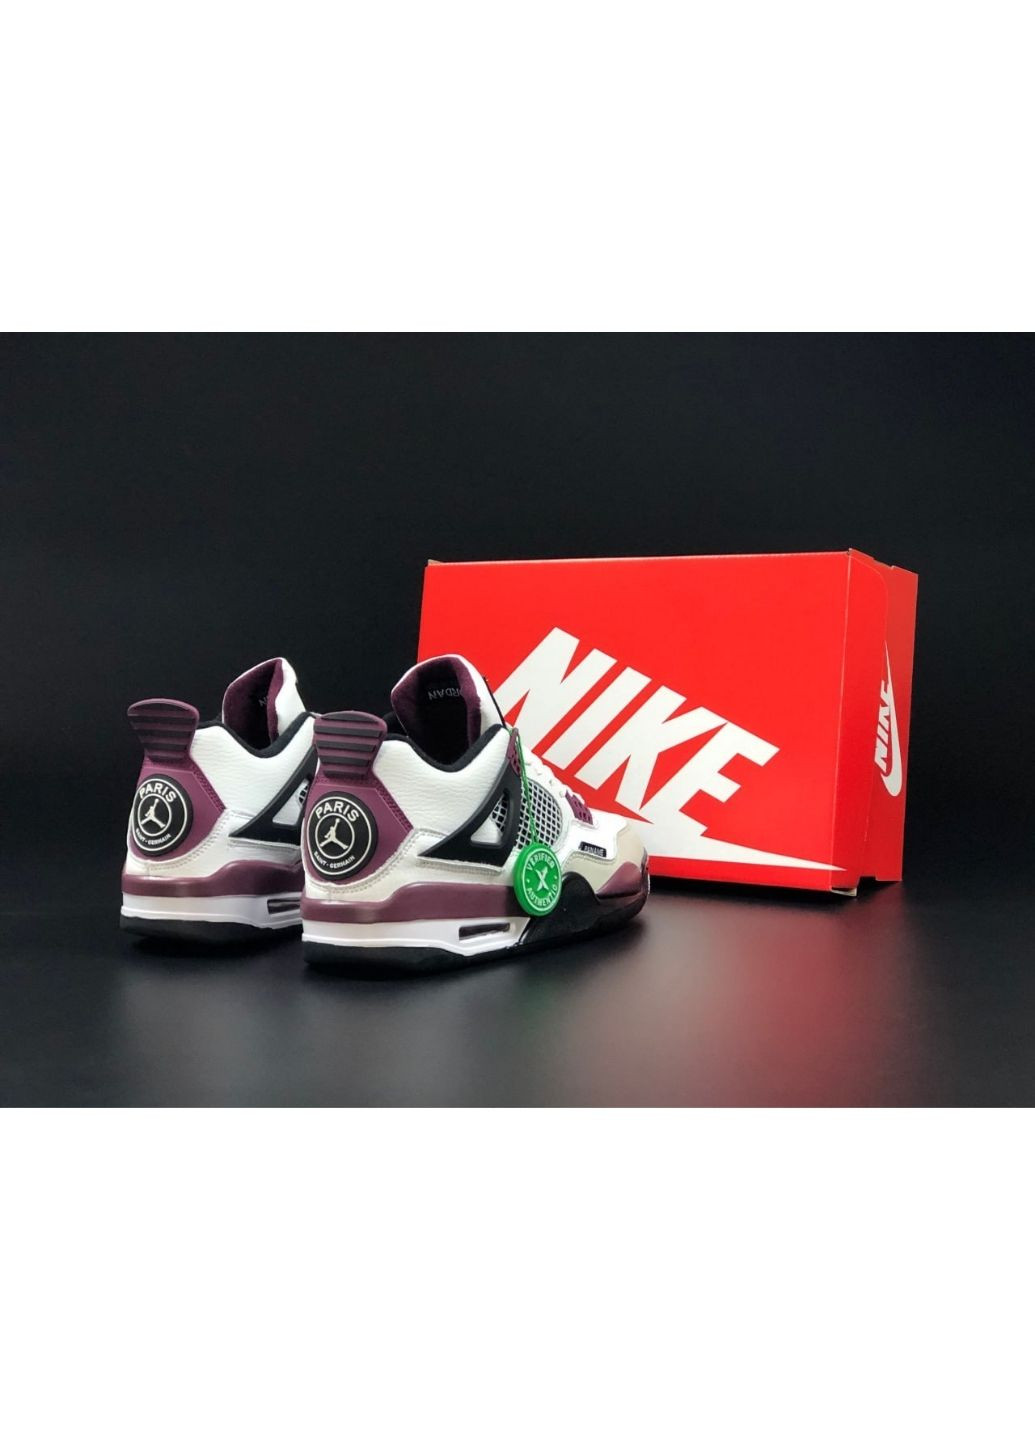 Білі Осінні чоловічі кросівки білі з бордовим «no name» Nike Air Jordan 4 Retro